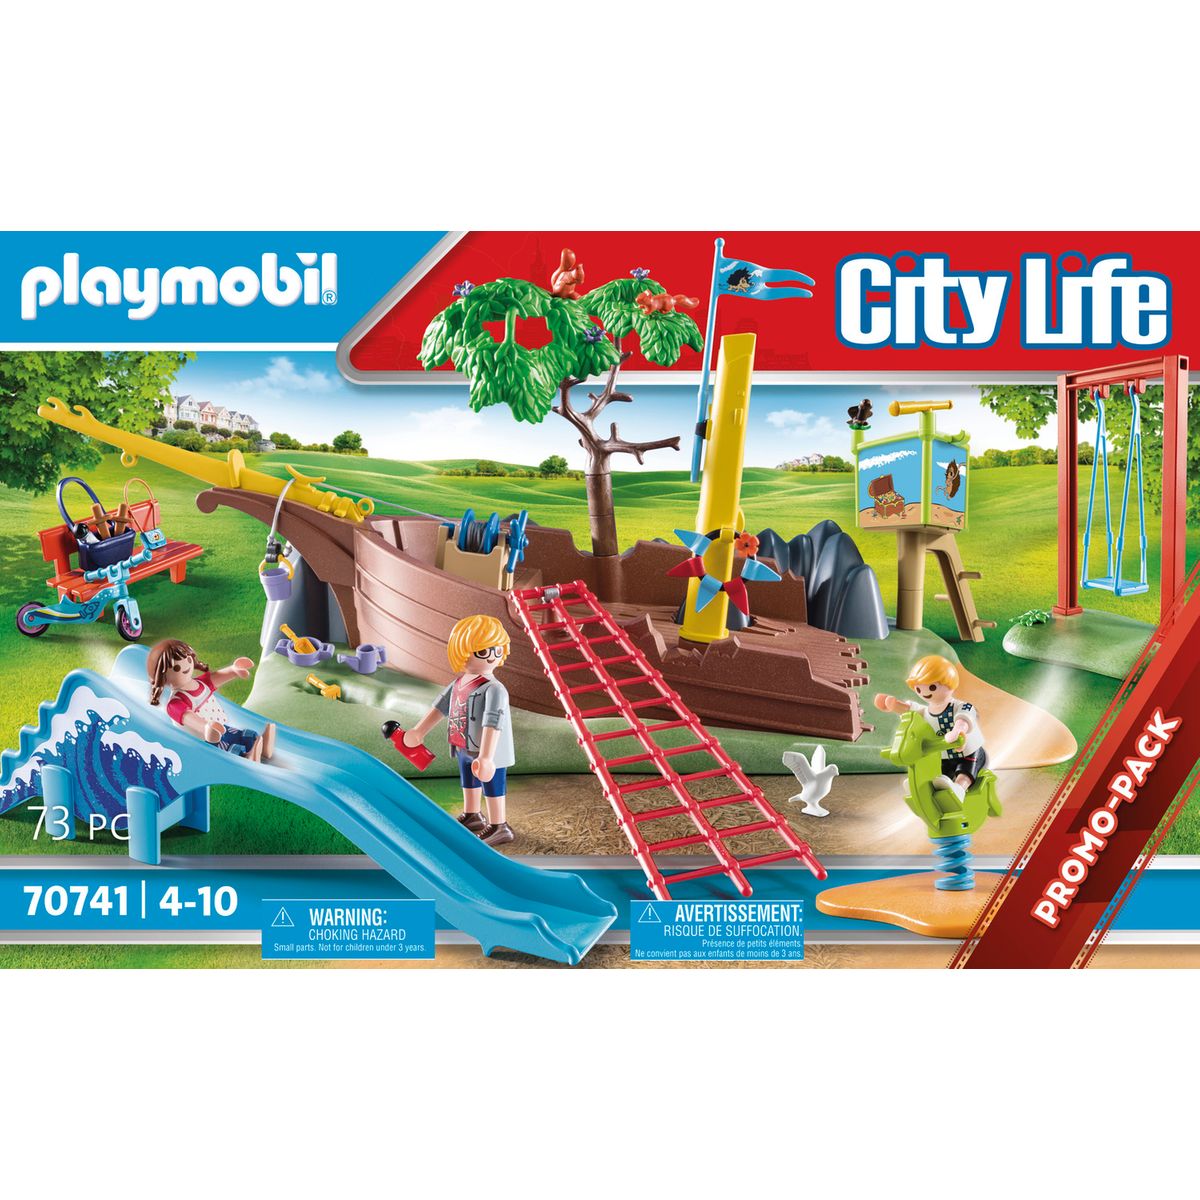 Parc de jeux pour enfants - PLAYMOBIL City Life - 70741 Playmobil : King  Jouet, Playmobil Playmobil - Jeux d'imitation & Mondes imaginaires